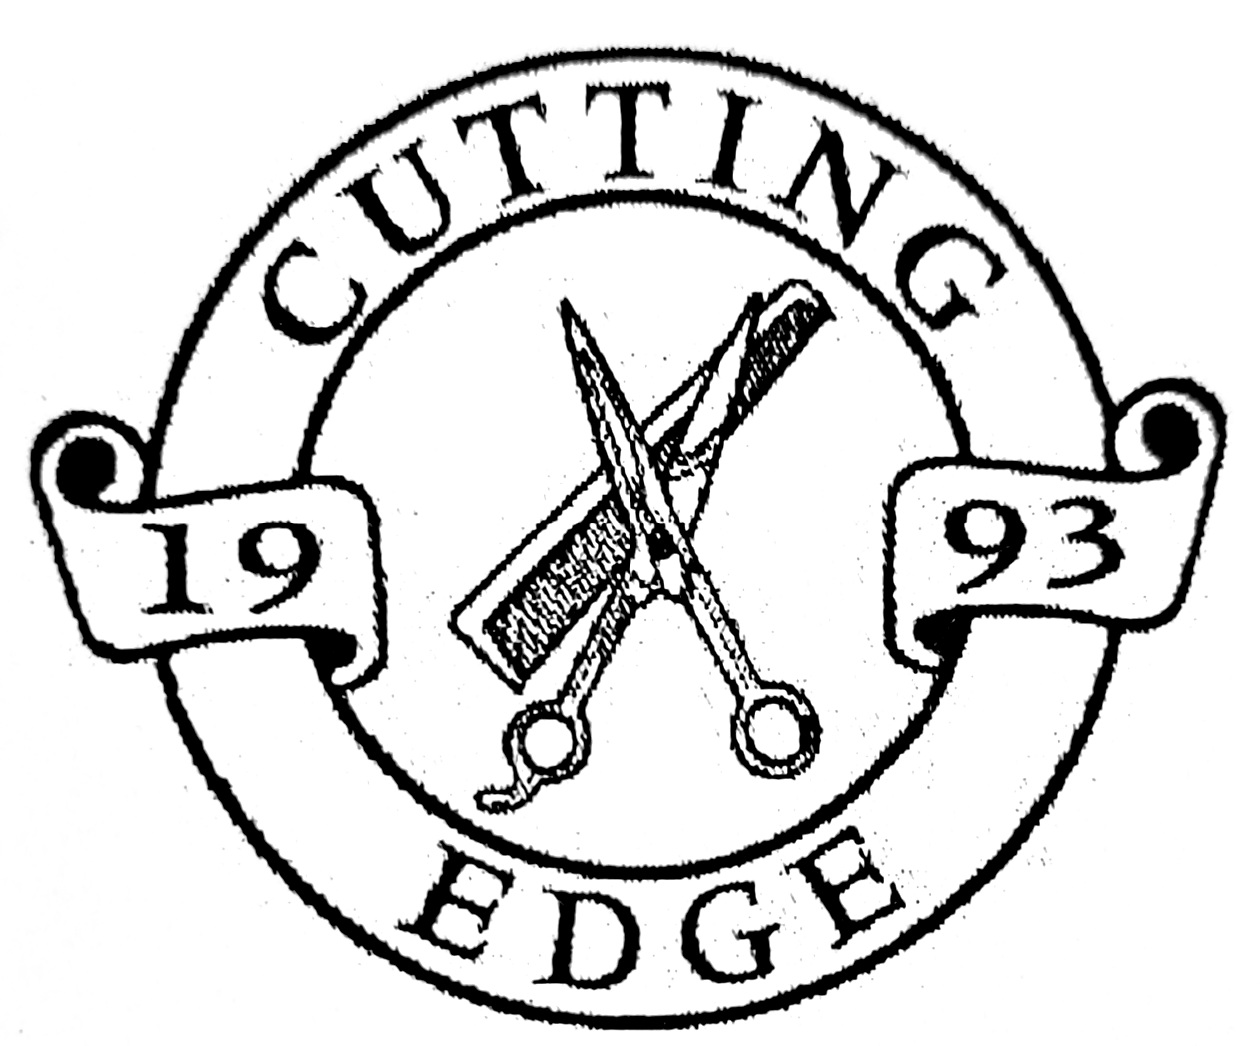 Cutting Edge Salon, The logo